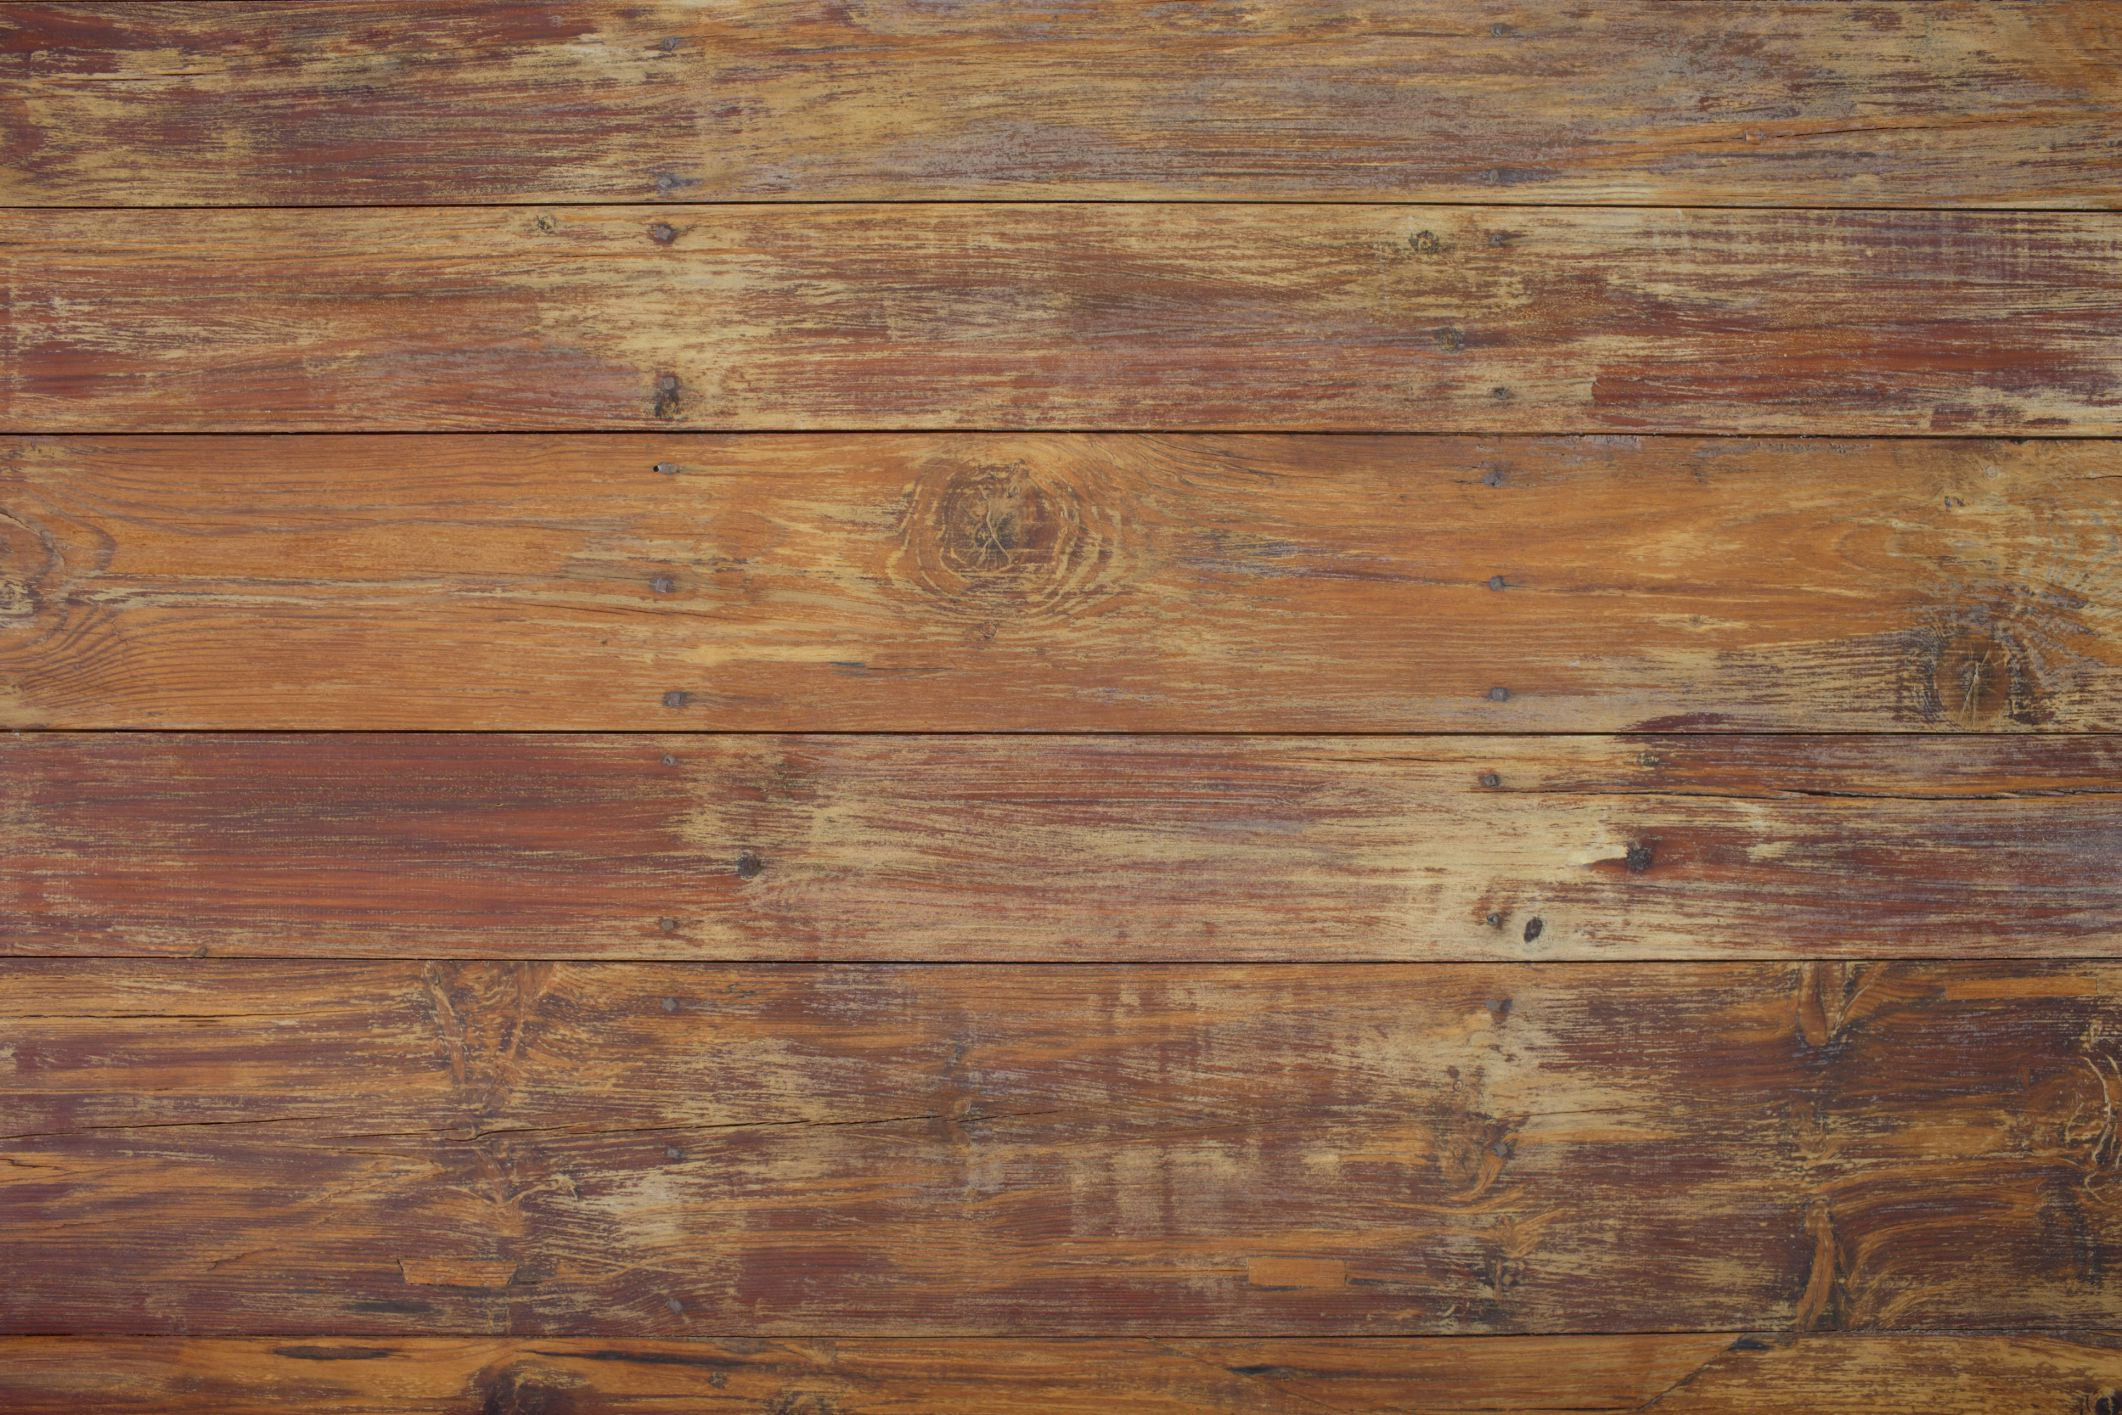 13 attractive Cost to Refinish Hardwood Floors In California 2022 free download cost to refinish hardwood floors in california of how to level a slanted sloping floor regarding oldslopingfloor 200378187 001 570d37d25f9b581408747176